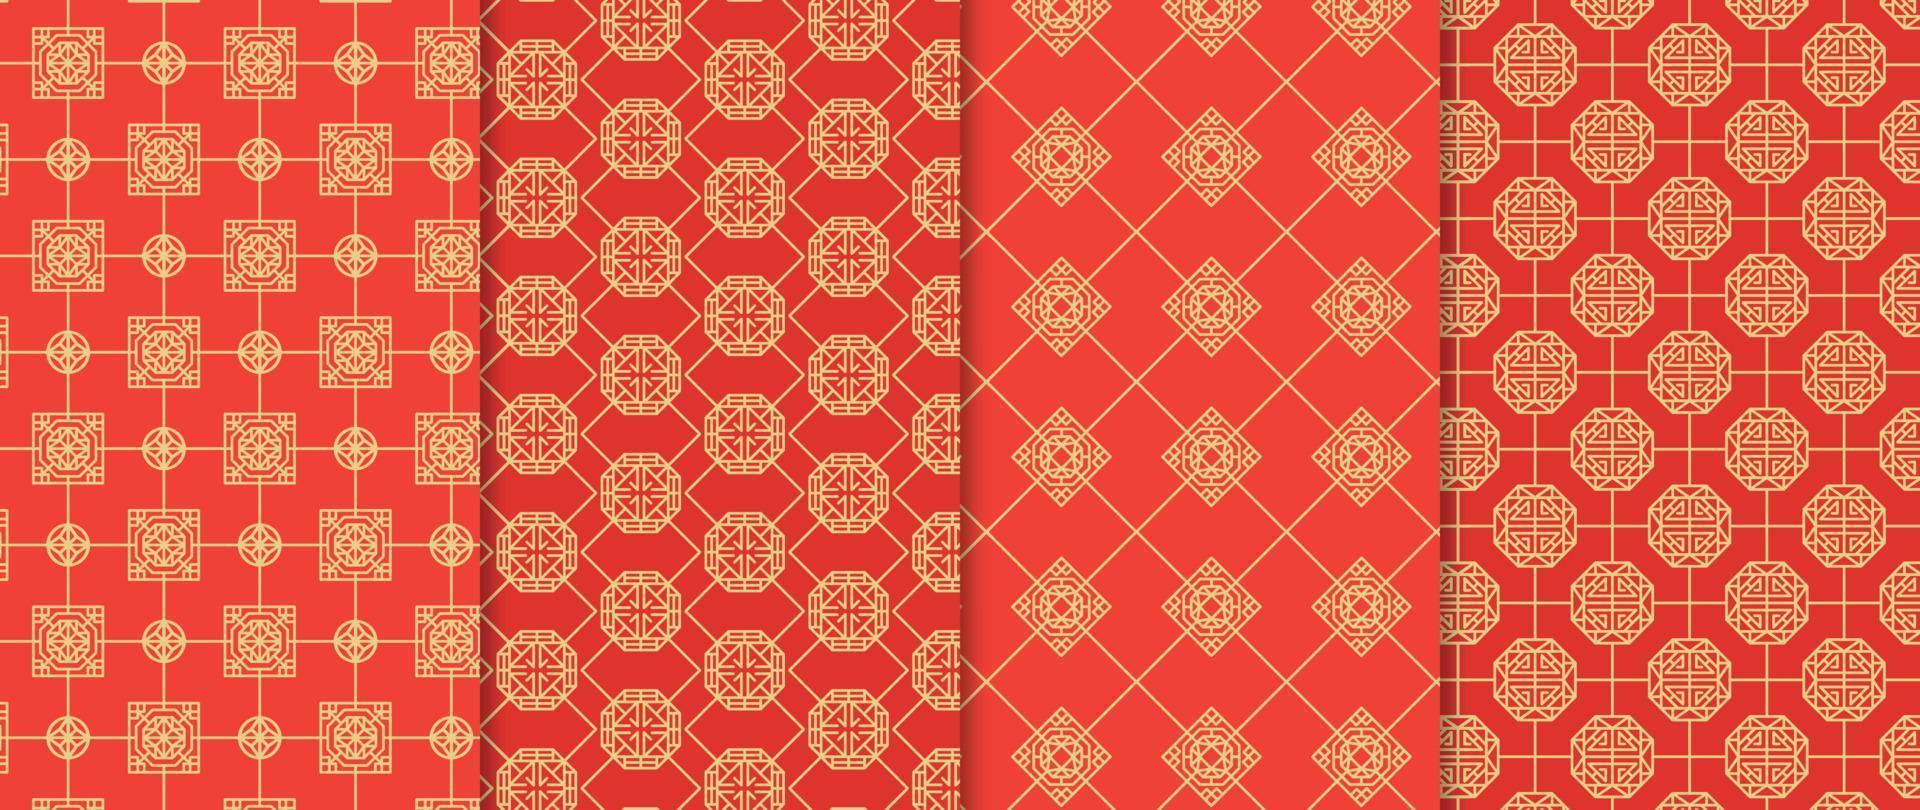 conjunto de vectores de fondo de patrones chinos. formas geométricas abstractas, patrones de vectores de cuadrícula y muestras. diseño de papel pintado oriental de lujo para telas, papel pintado, pancartas, estampados y artes de pared.